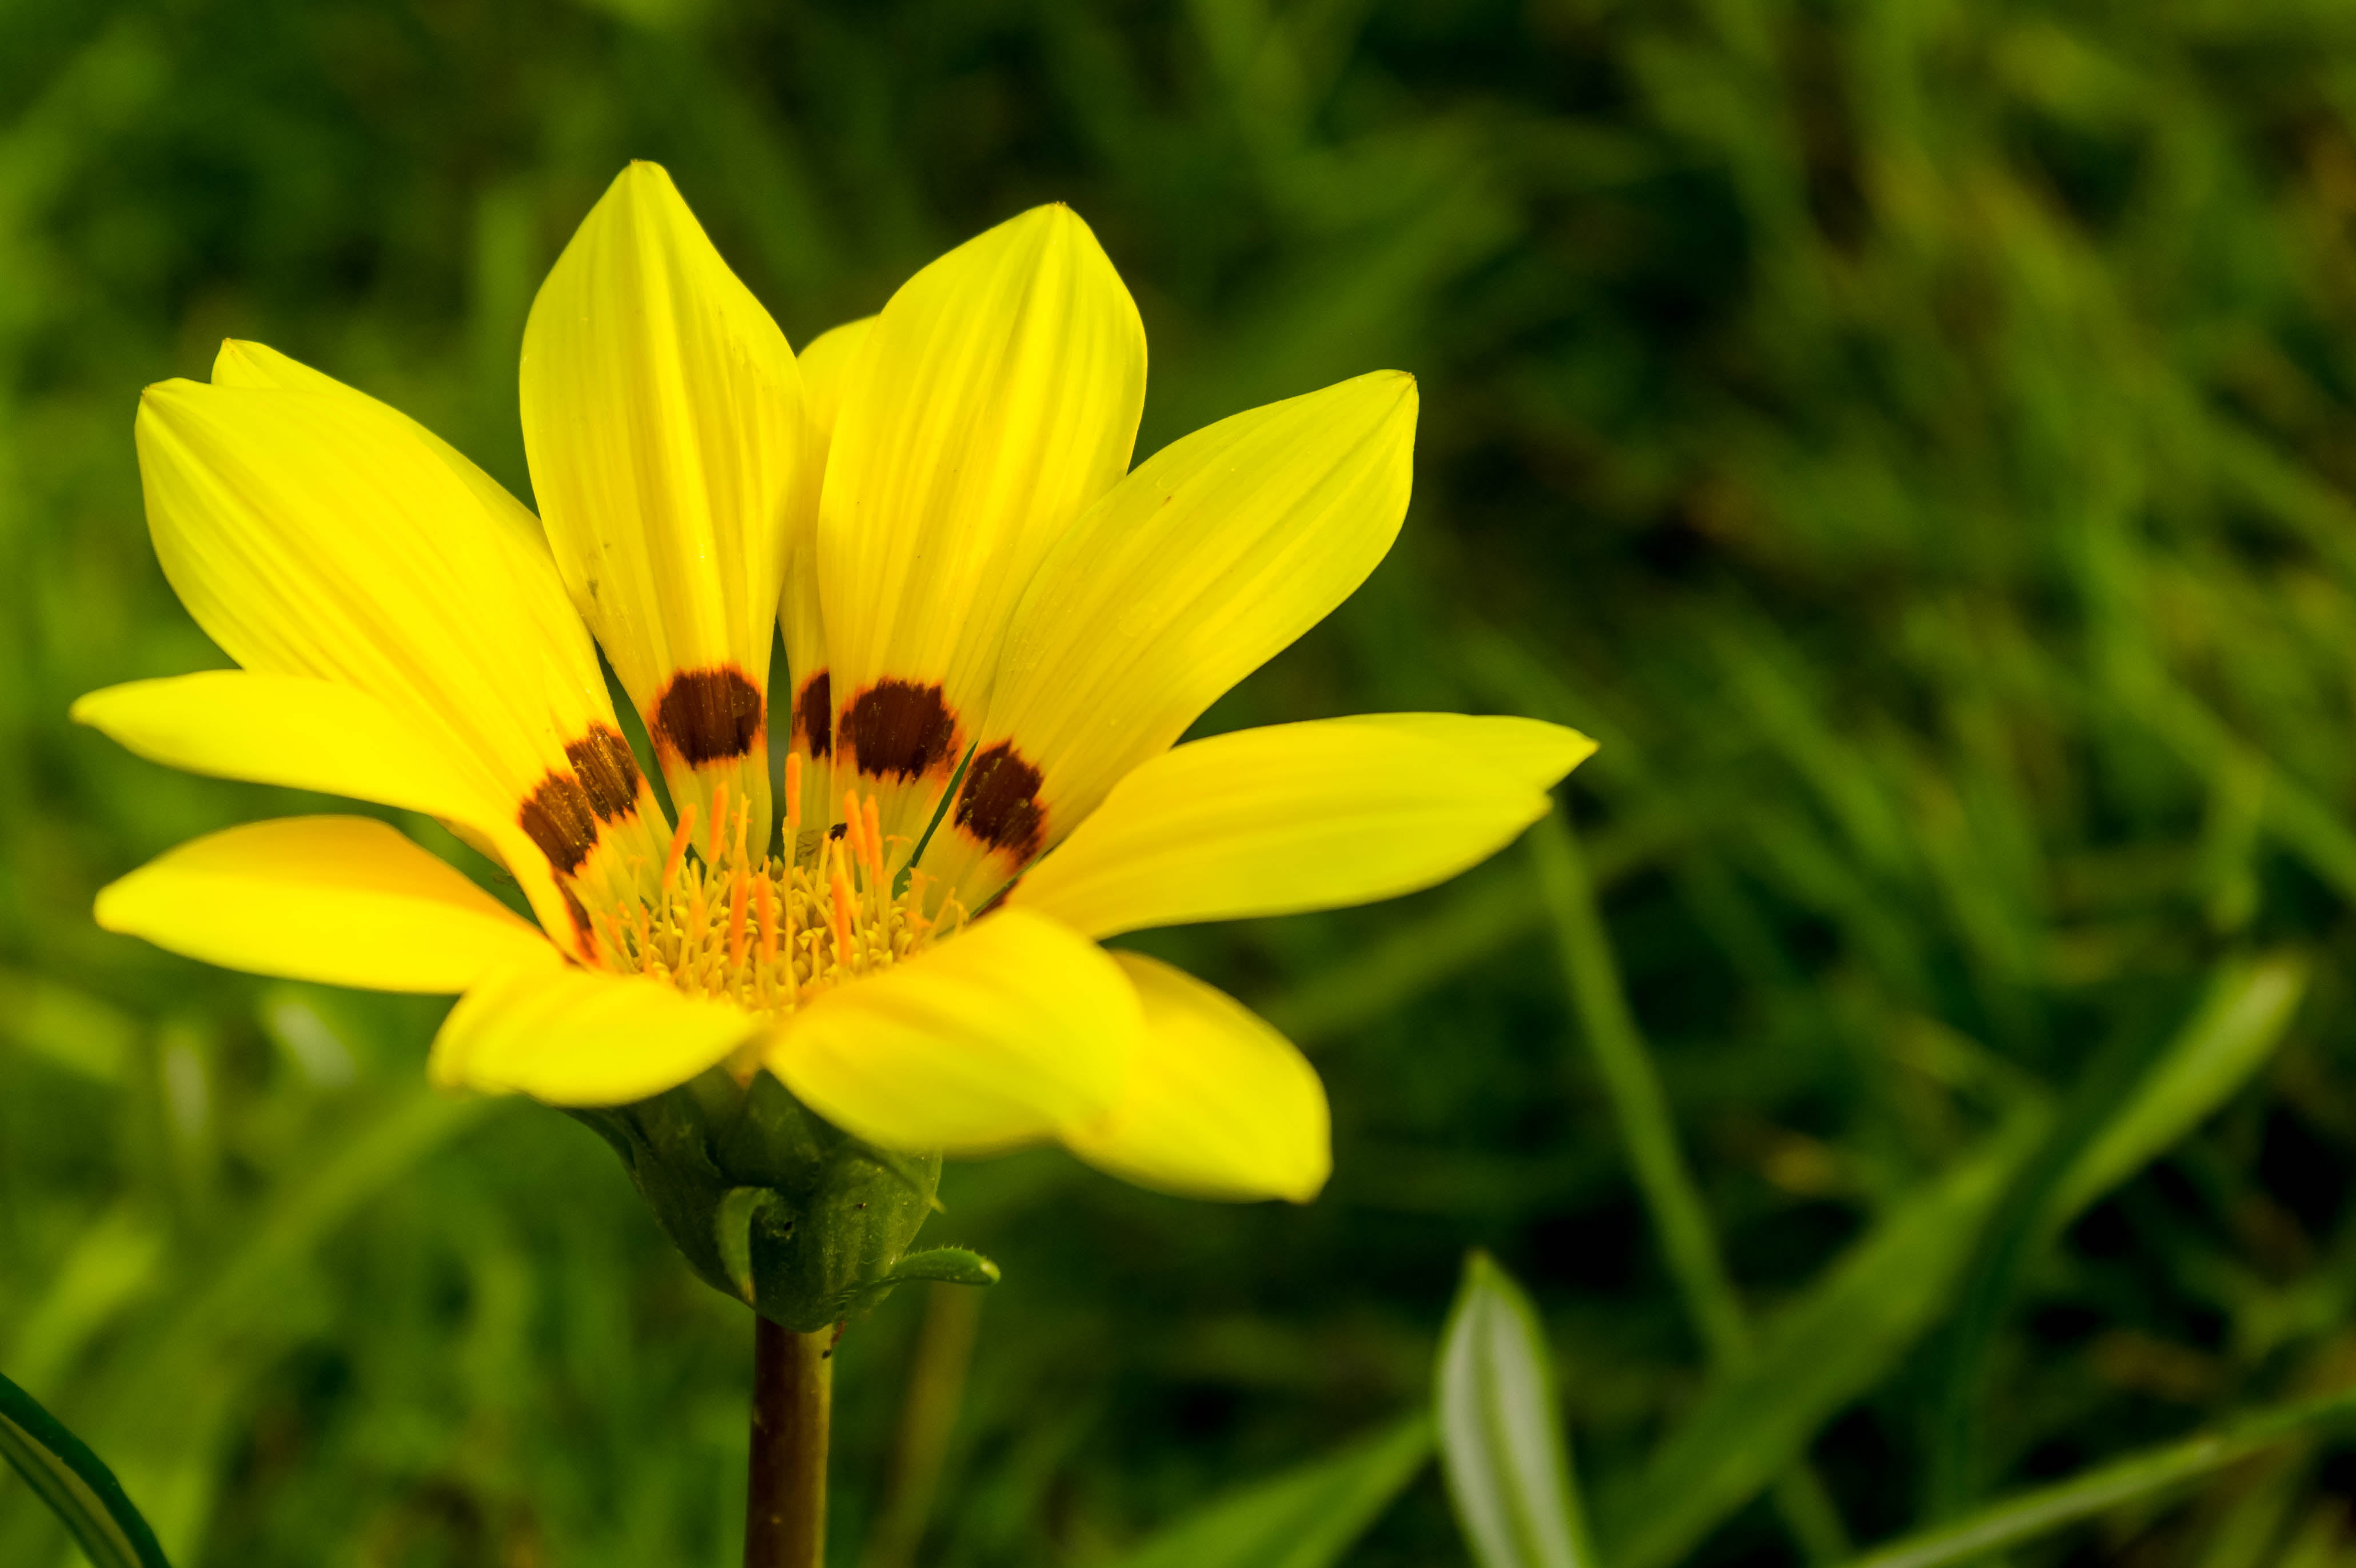 yellow petaled flower during daytime, Garden, Bokeh, Closeup